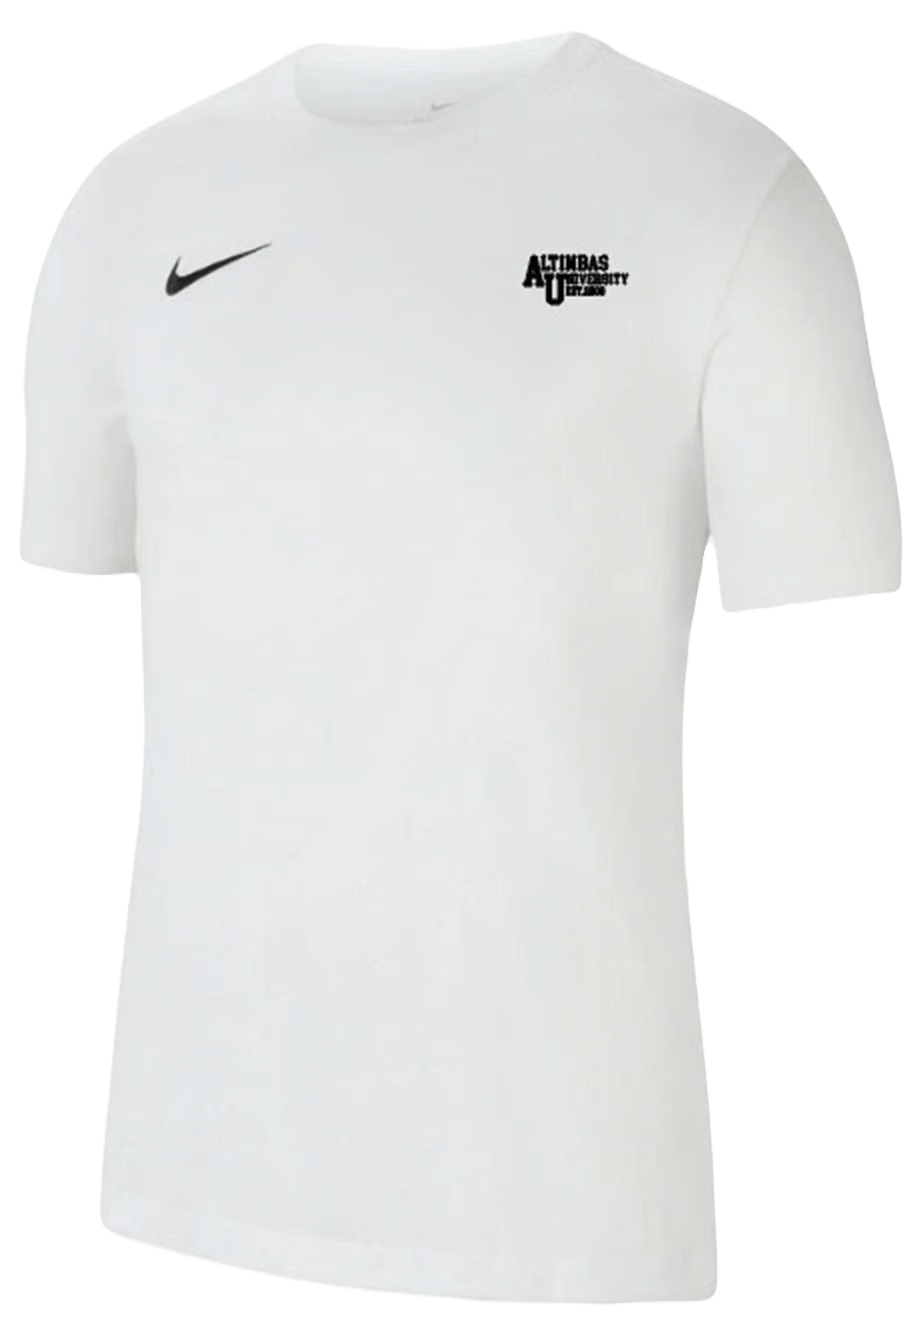 Nike Erkek Basic T-Shirt Beyaz / Nike Men's Basic T-Shirt White